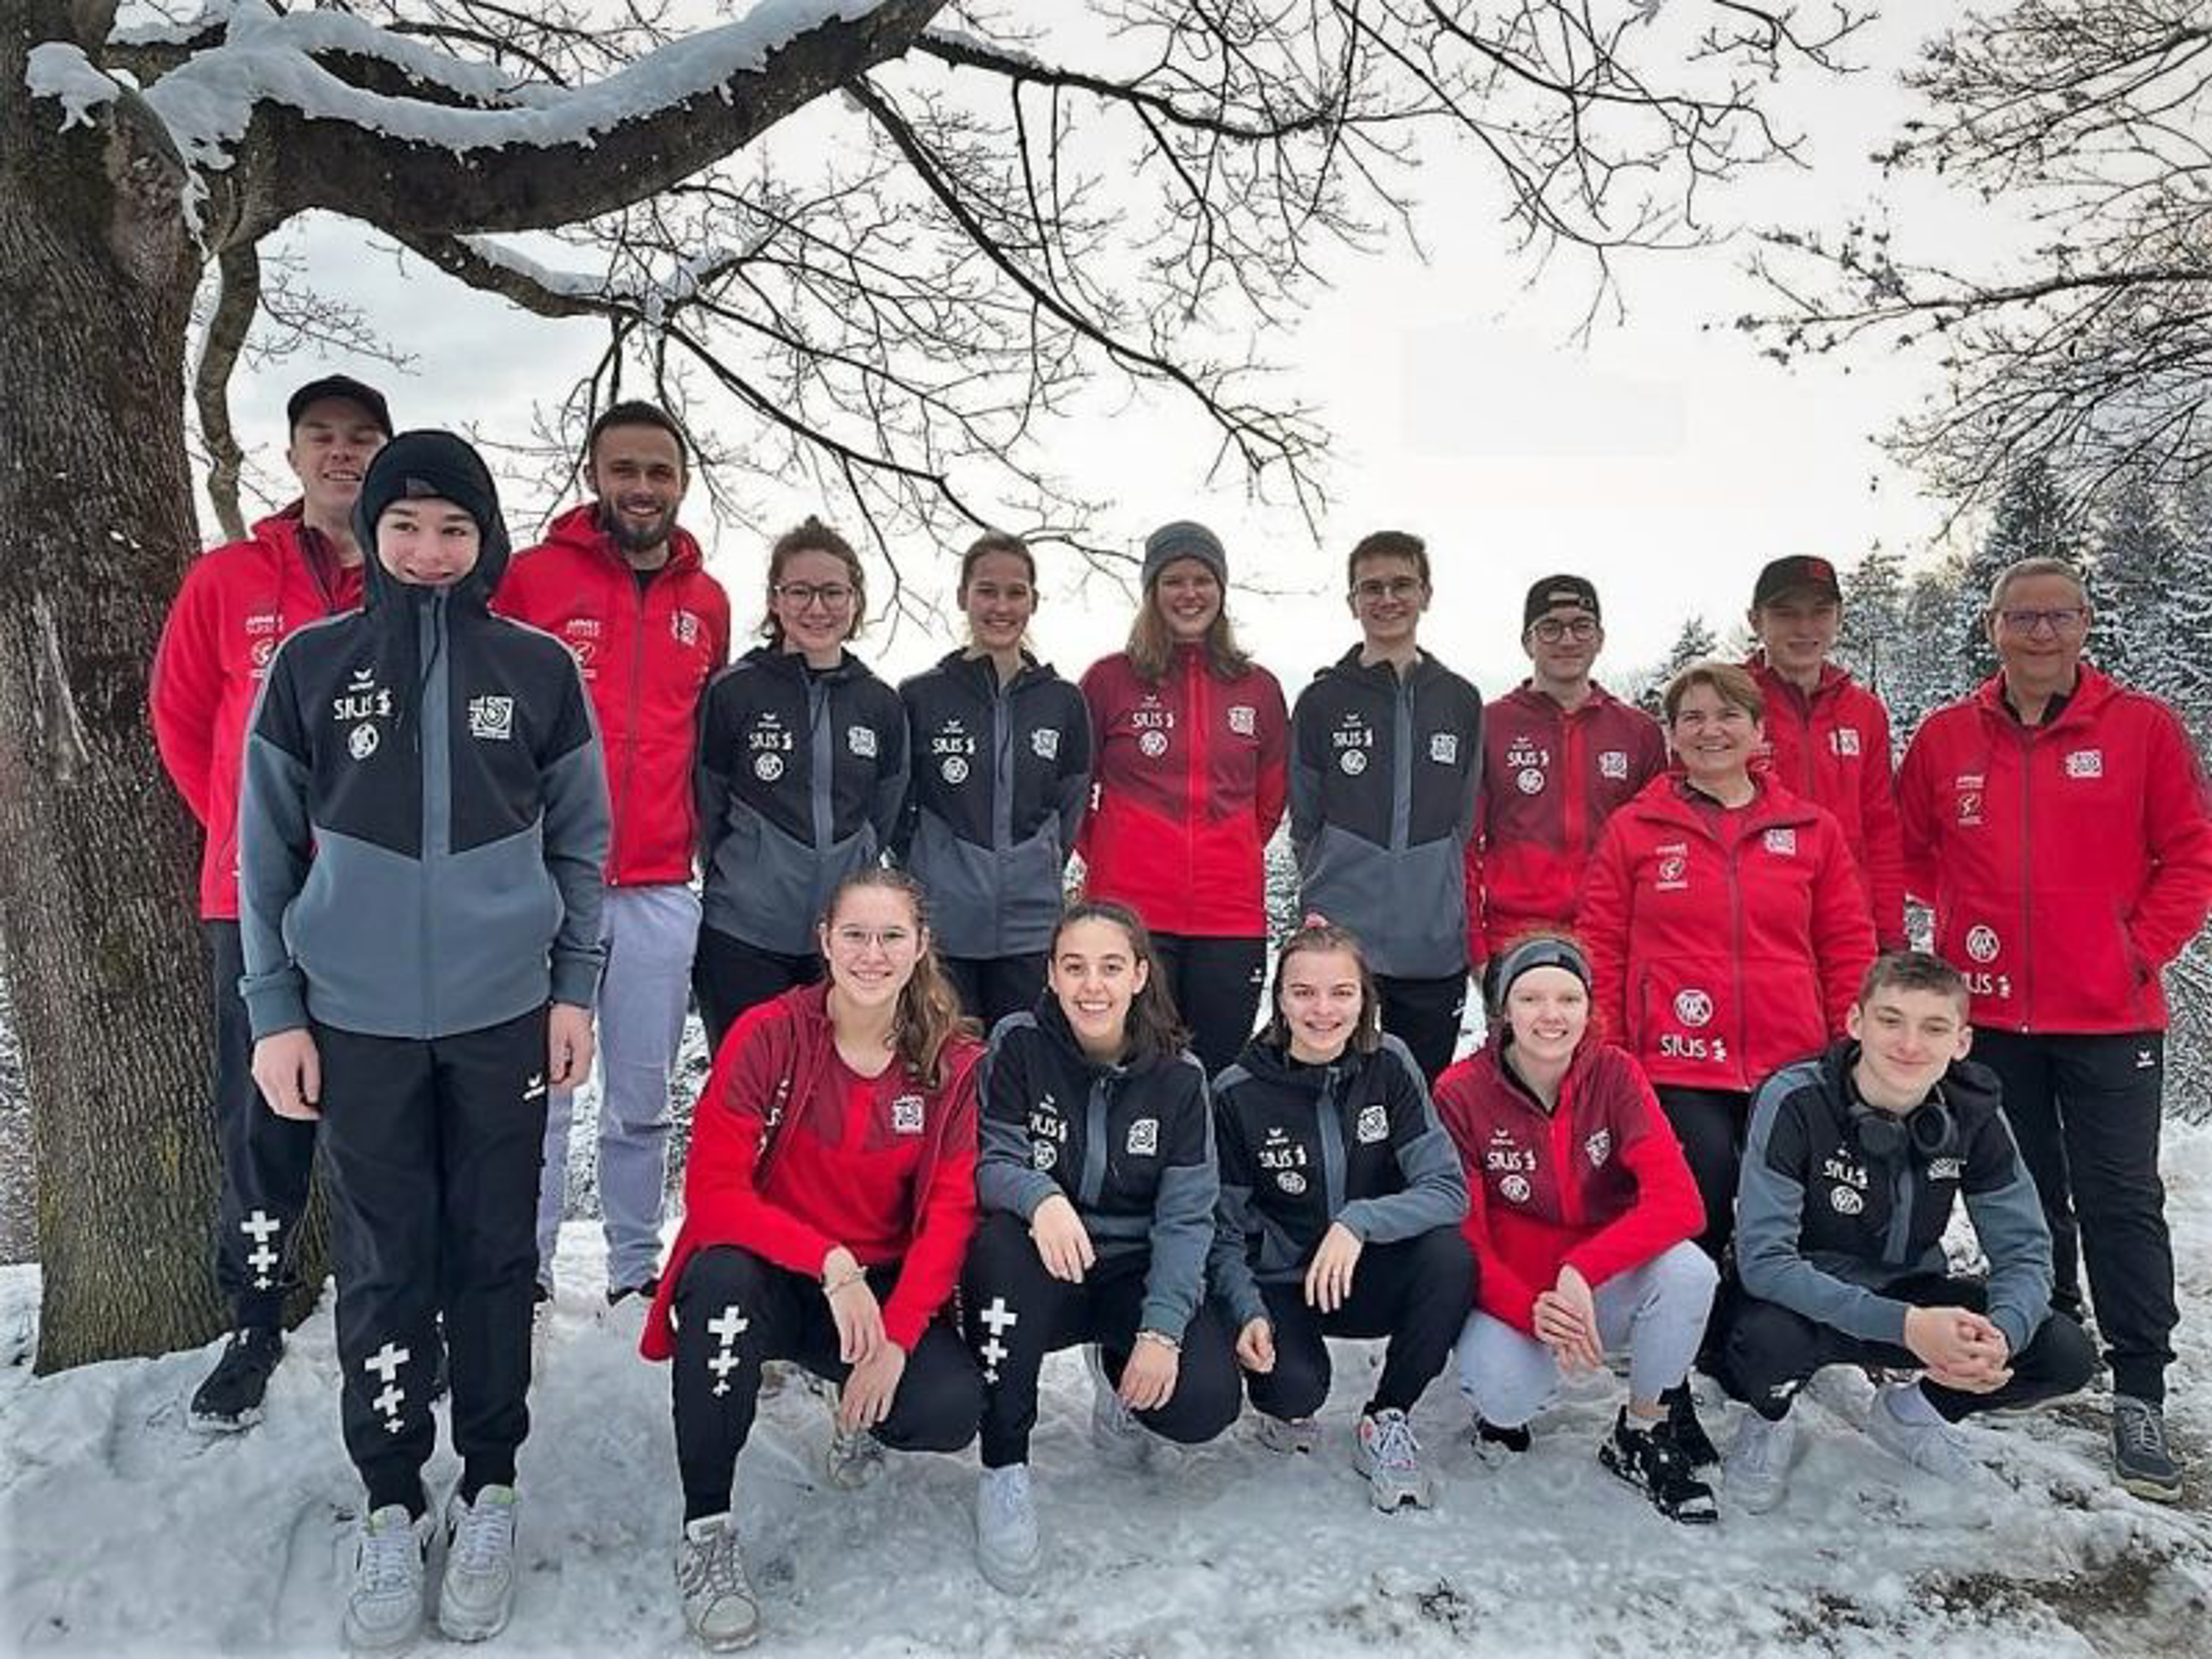 Die Schweizer Juniorinnen und Junioren zusammen mit ihrer Trainerin und den Trainern.